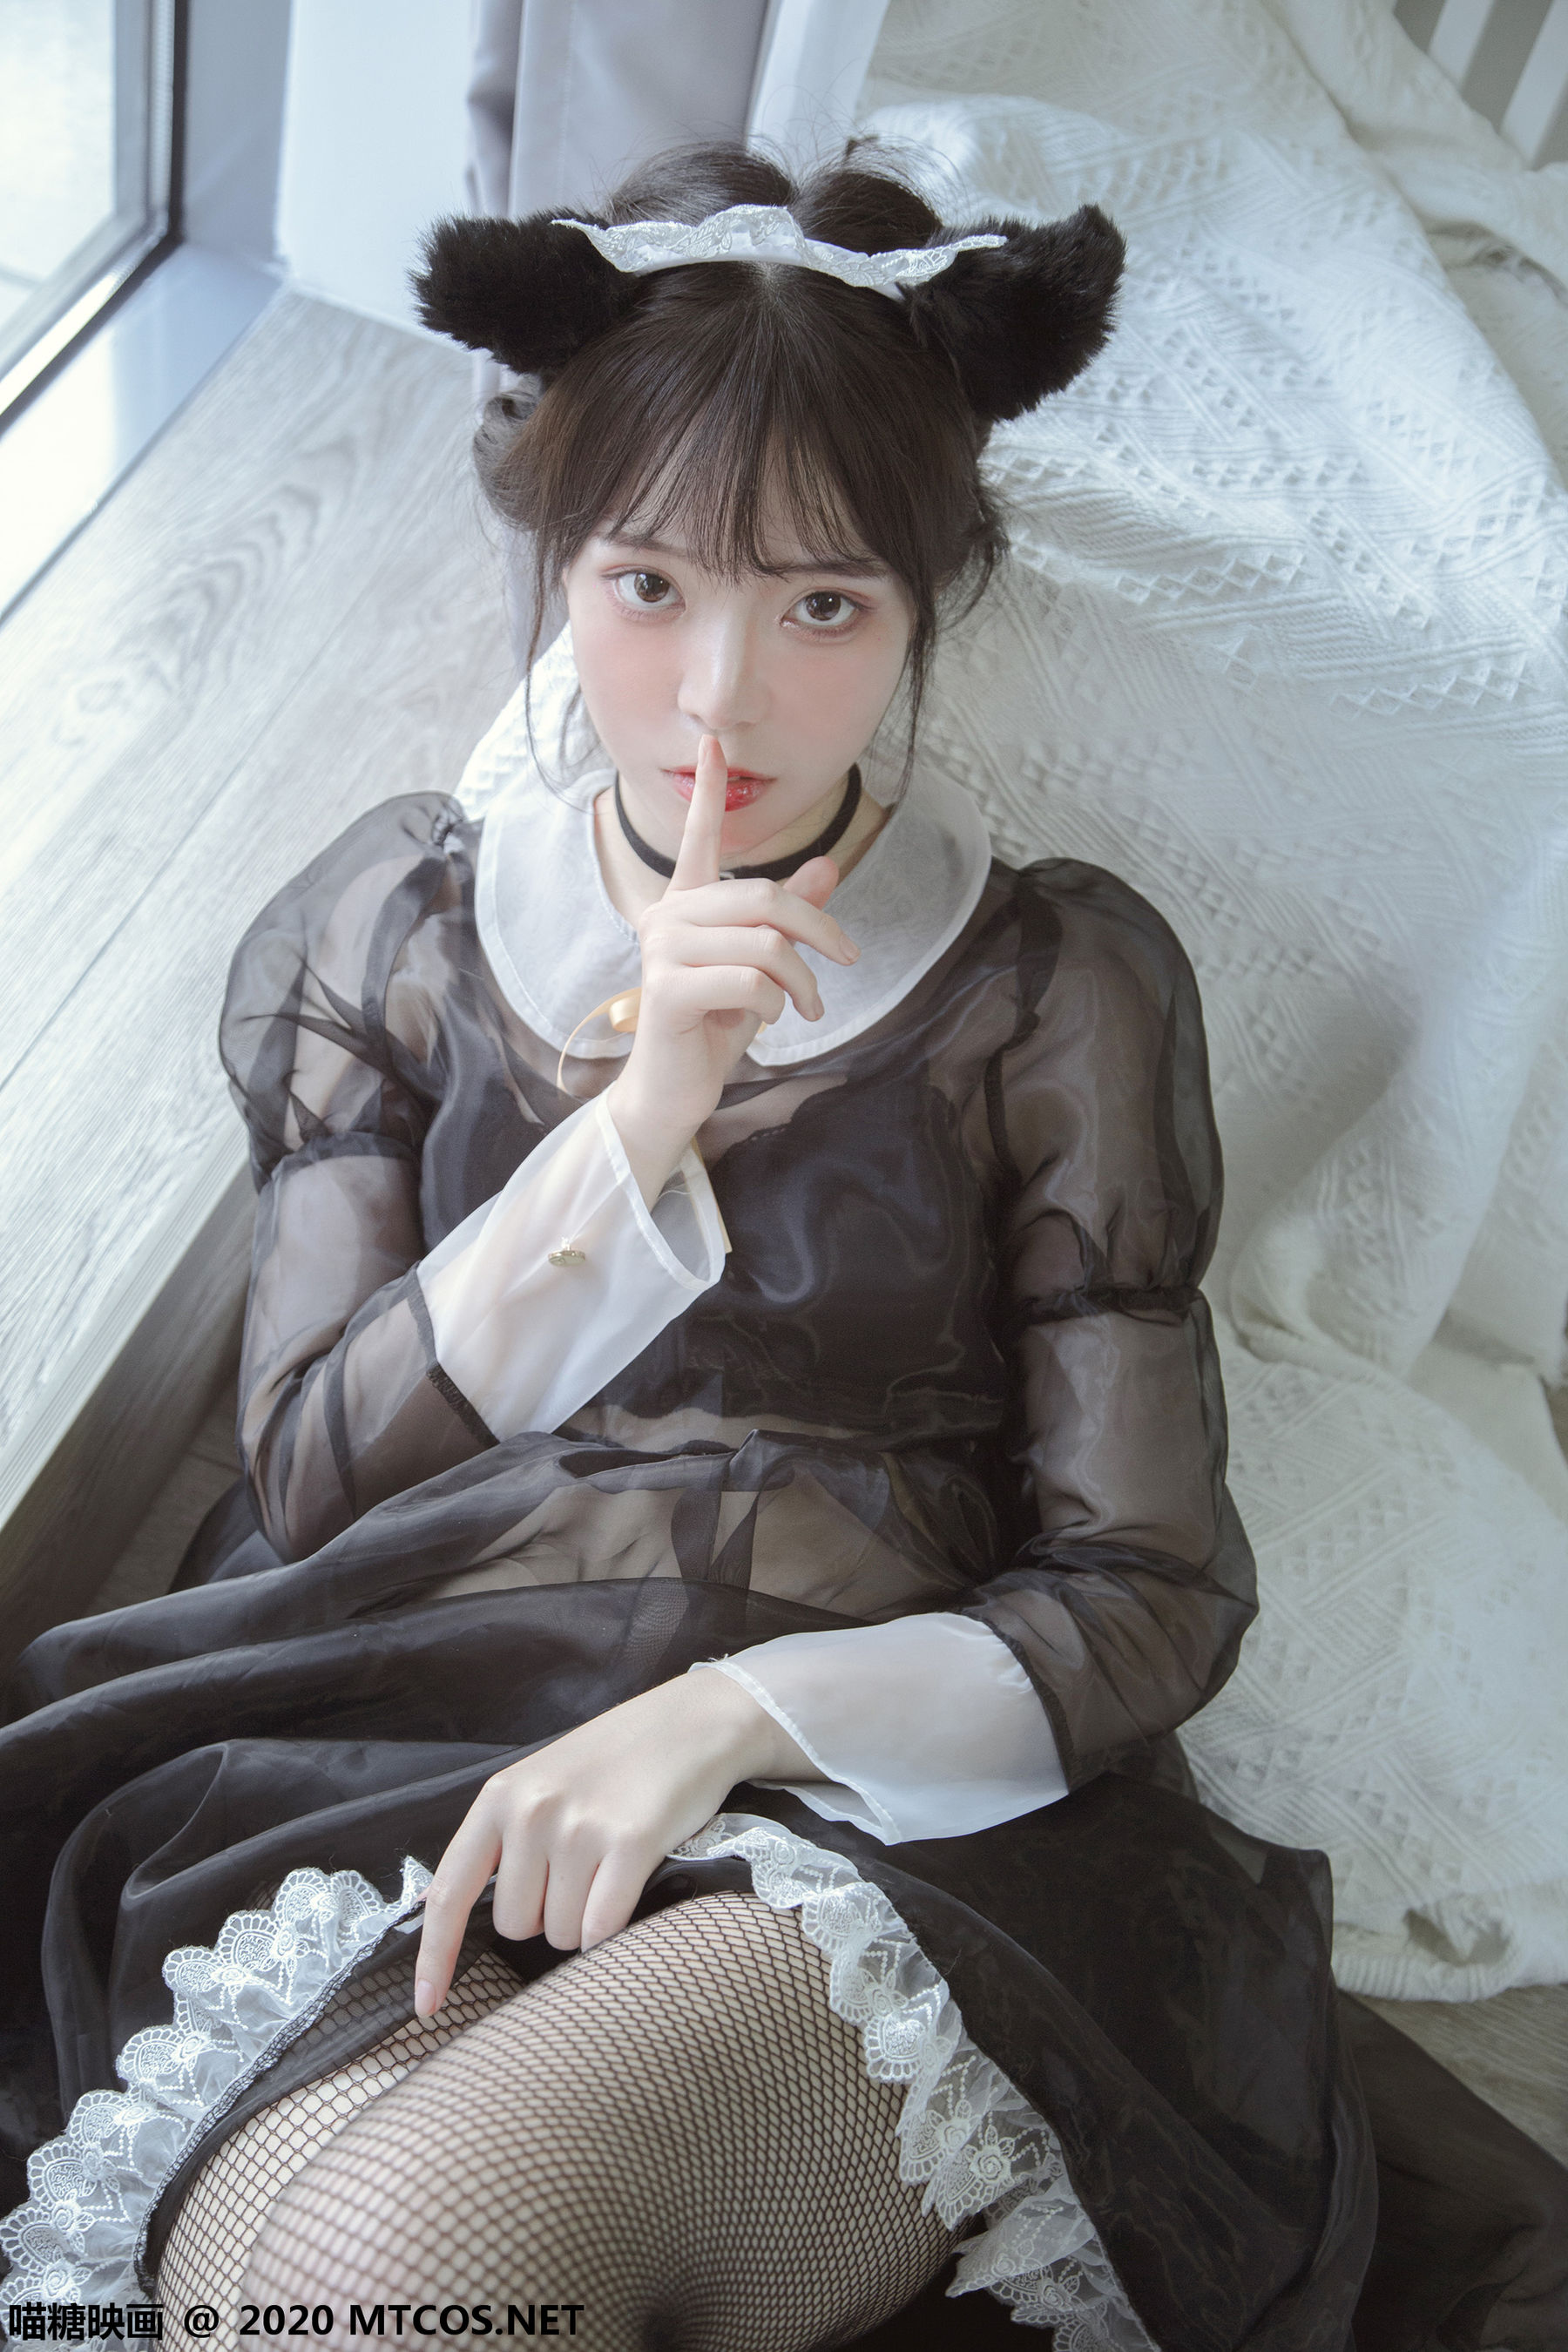 [糖] Vol.317 Haishu maid photo set